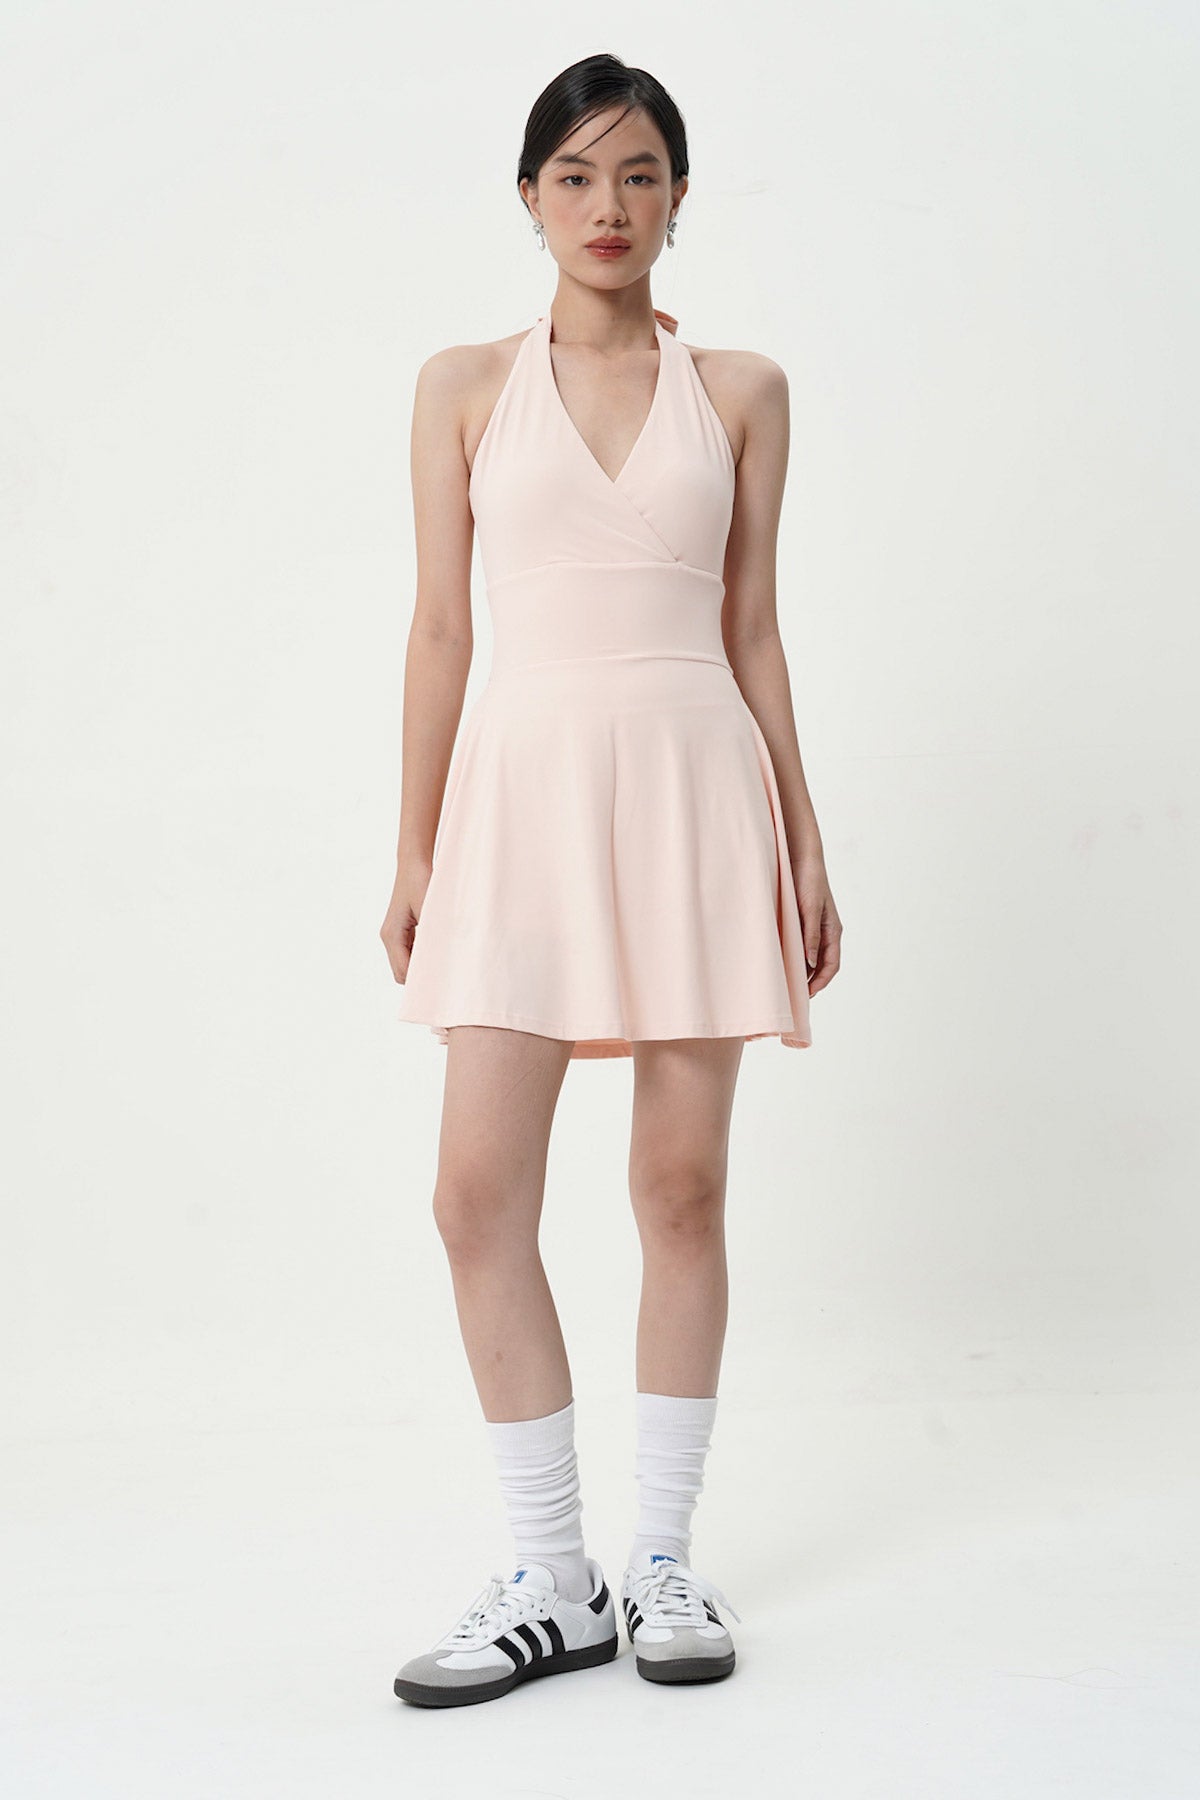 Expressive Dress in Peach